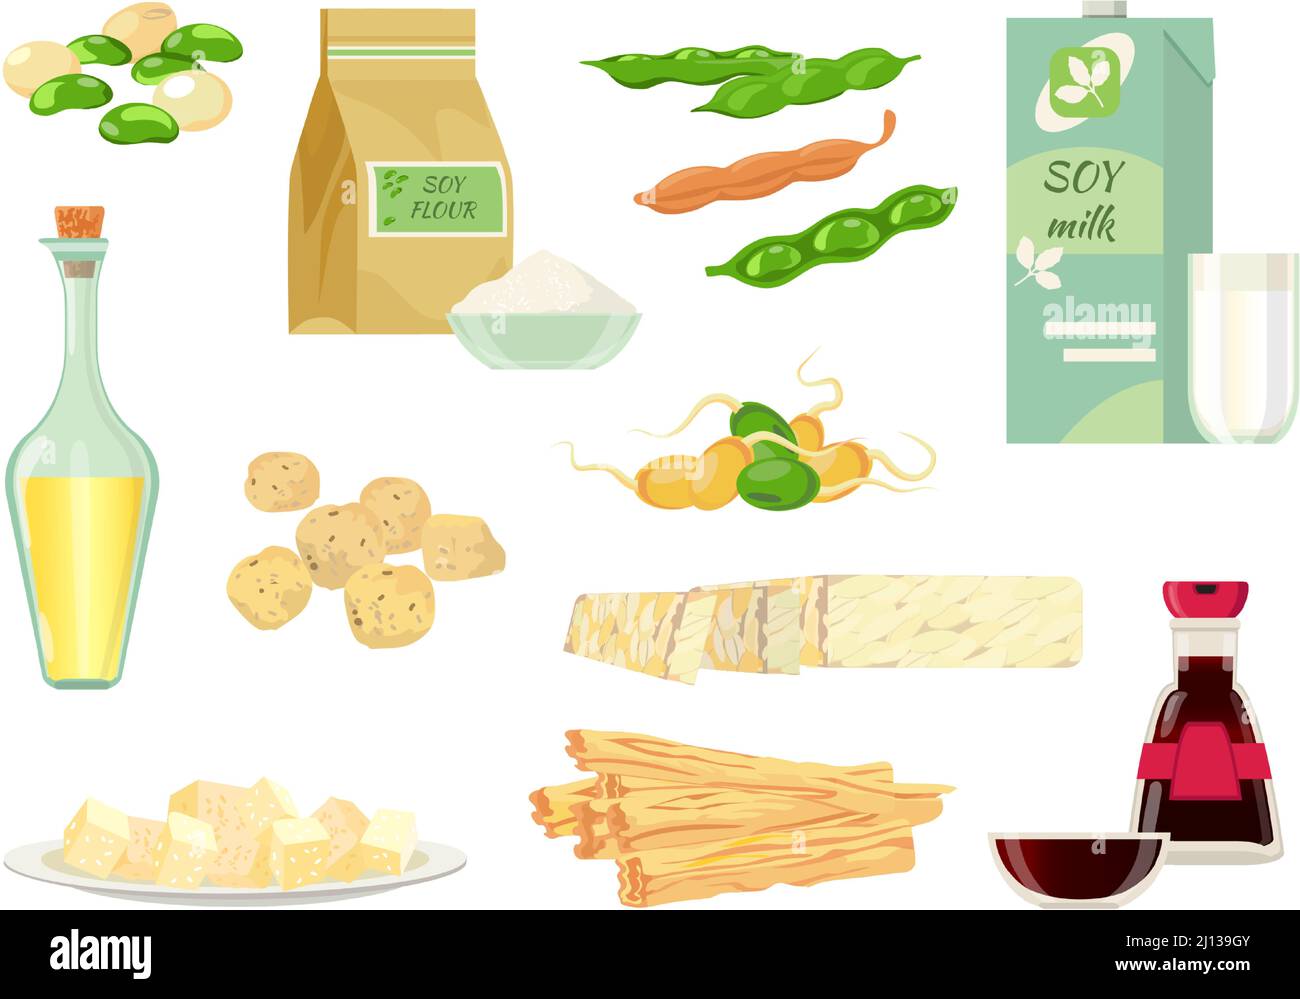 Cartoon Sojabohnen, Öl, Milch, Soße und Tofu. Gesunde grüne Sprossen, Hülsen, Sojafleisch, Mehl und Tempeh. Vegane Soja-Produkte Vektor-Set Stock Vektor